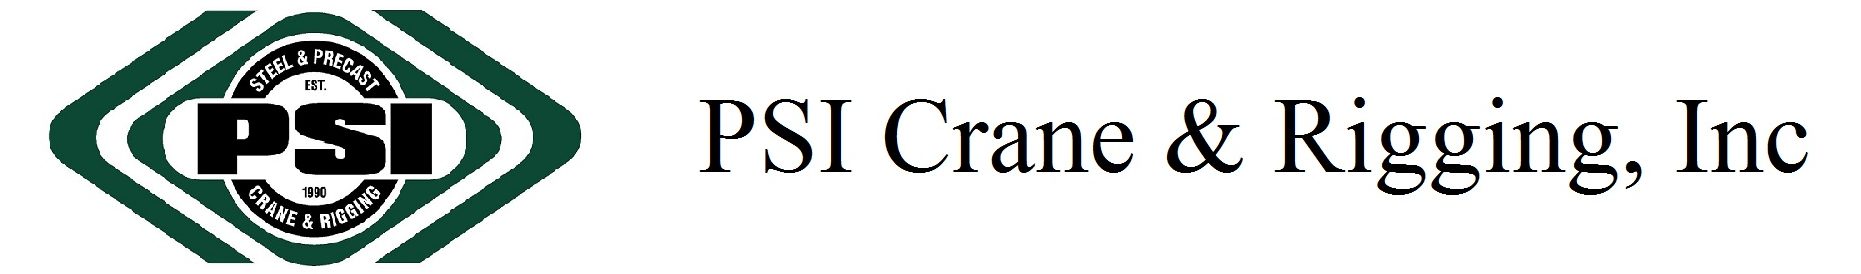 PSI Crane & Rigging, Inc